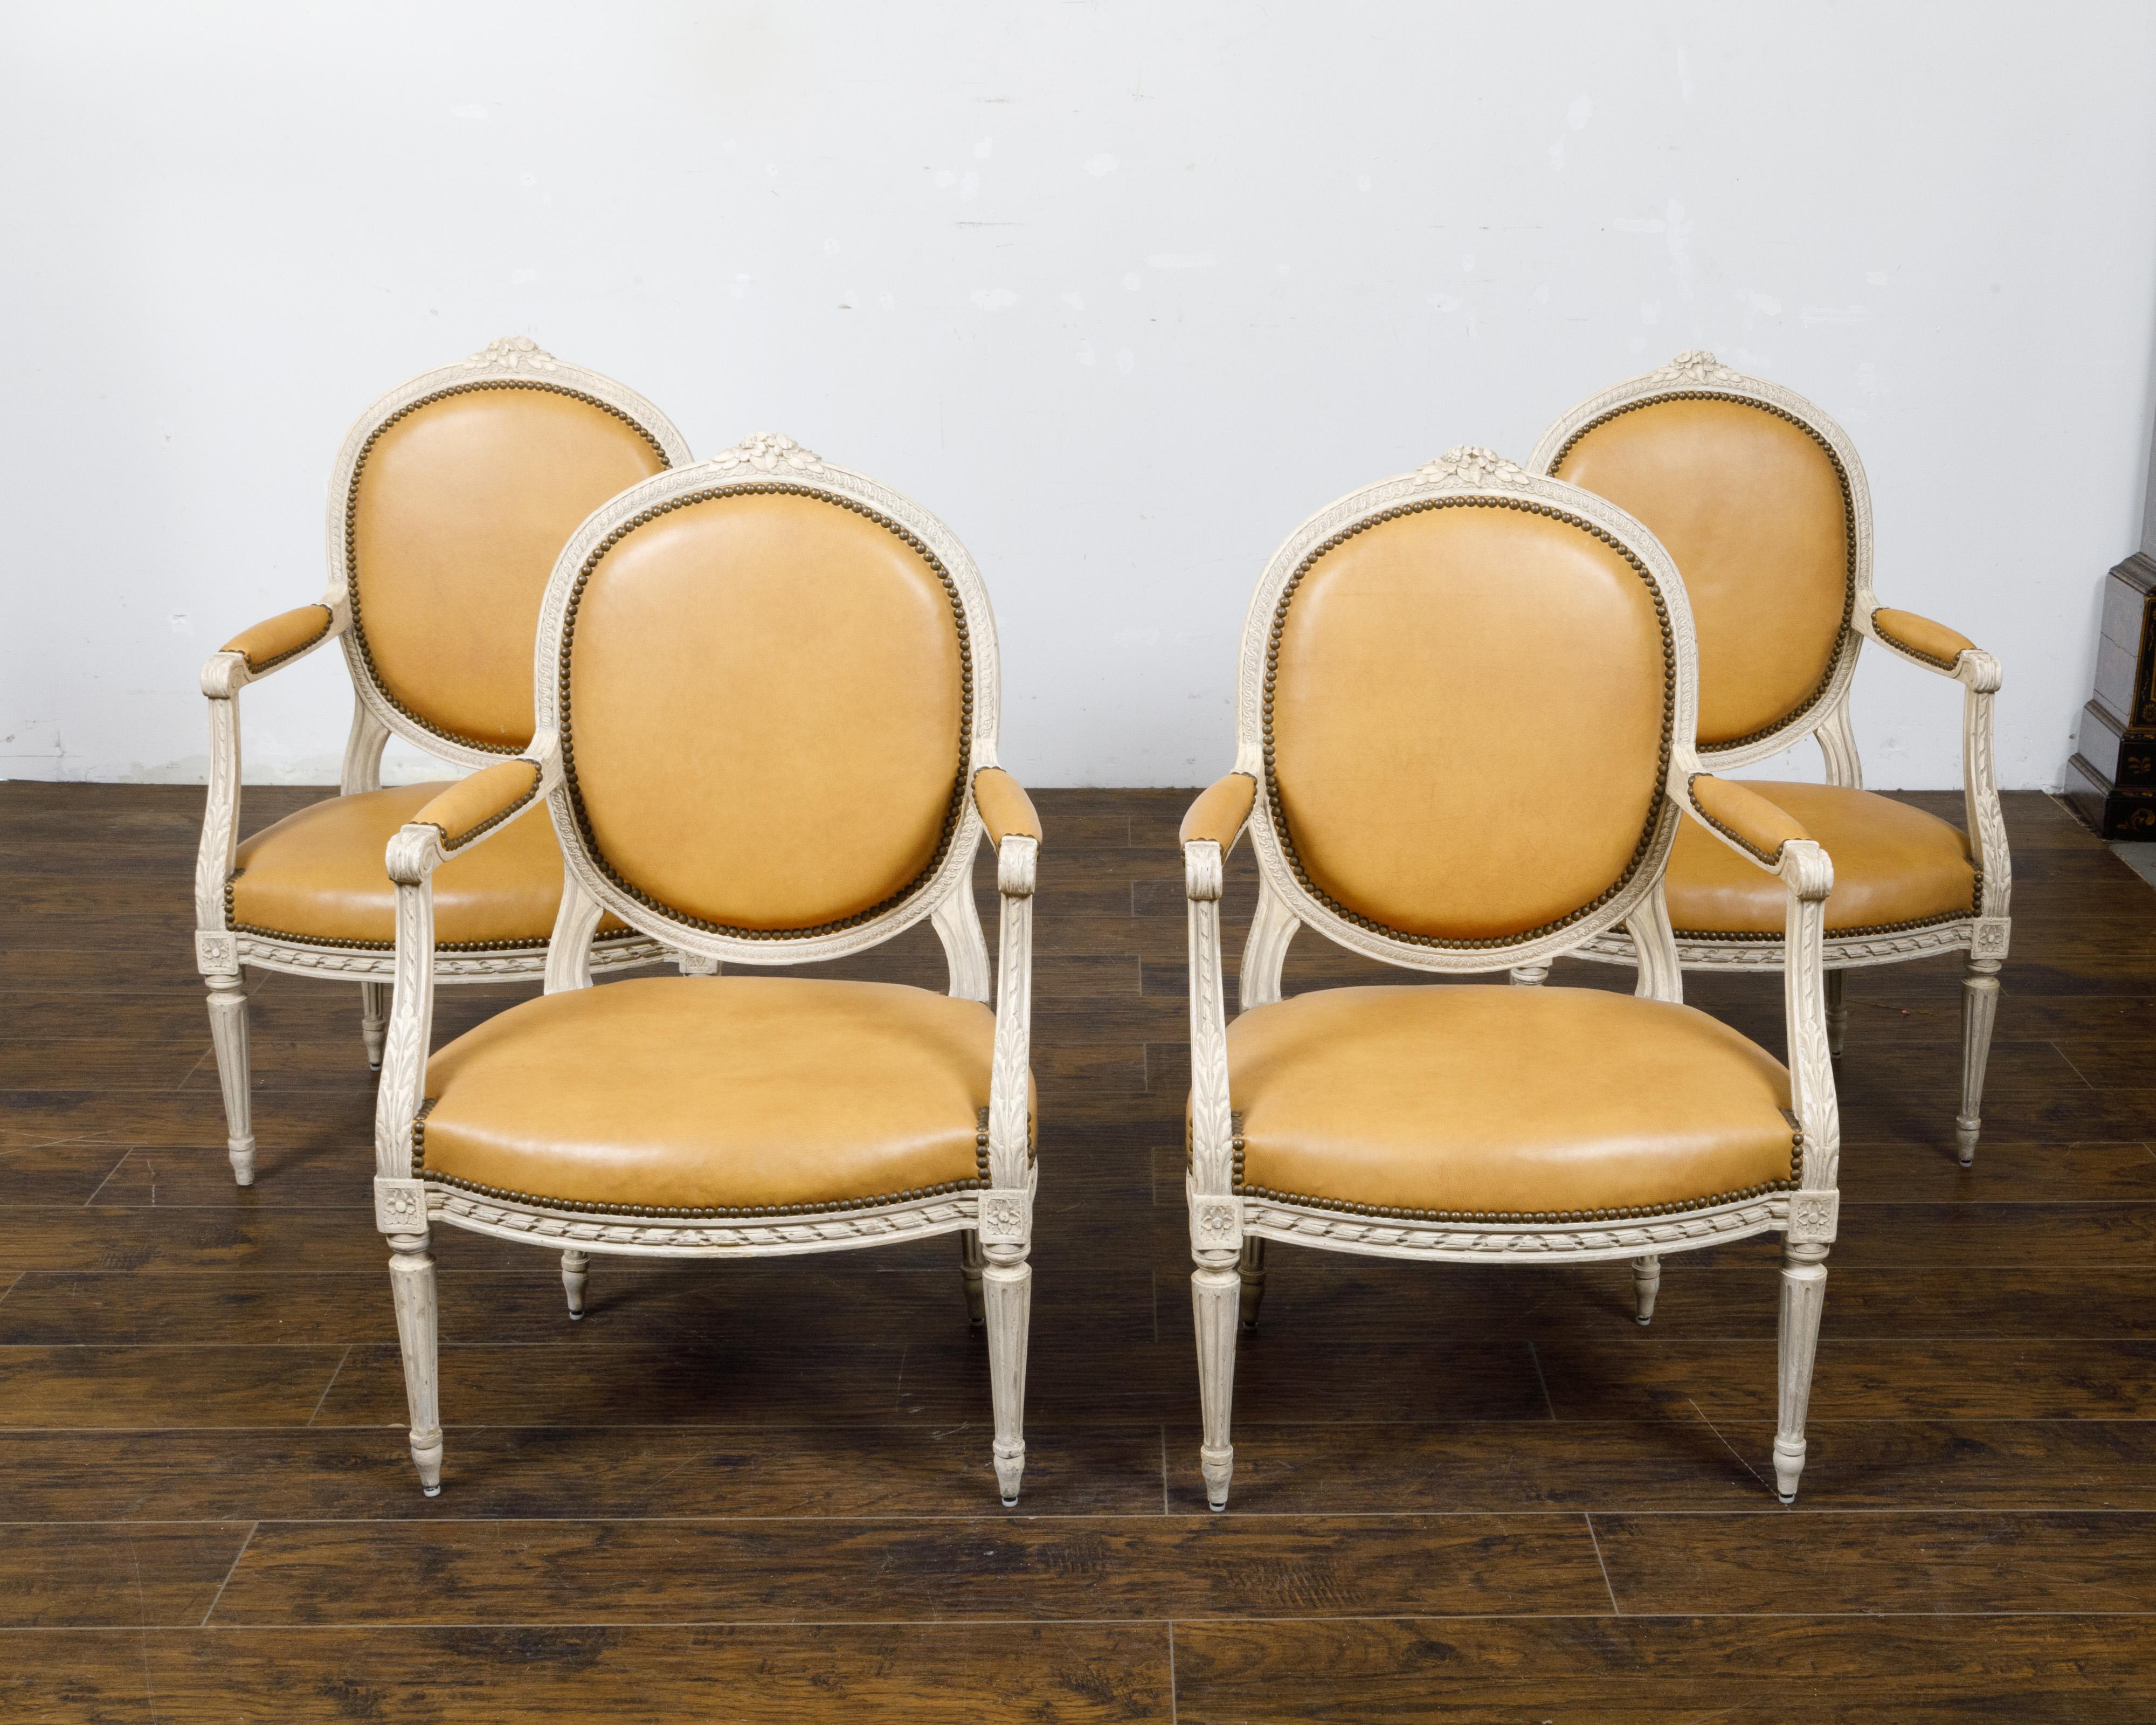 Ensemble de quatre fauteuils à dossier ovale de style Louis XVI, peints en blanc cassé, datant d'environ 1900, avec décor sculpté. Cet ensemble de quatre fauteuils français de style Louis XVI, datant d'environ 1900, présente une élégante finition